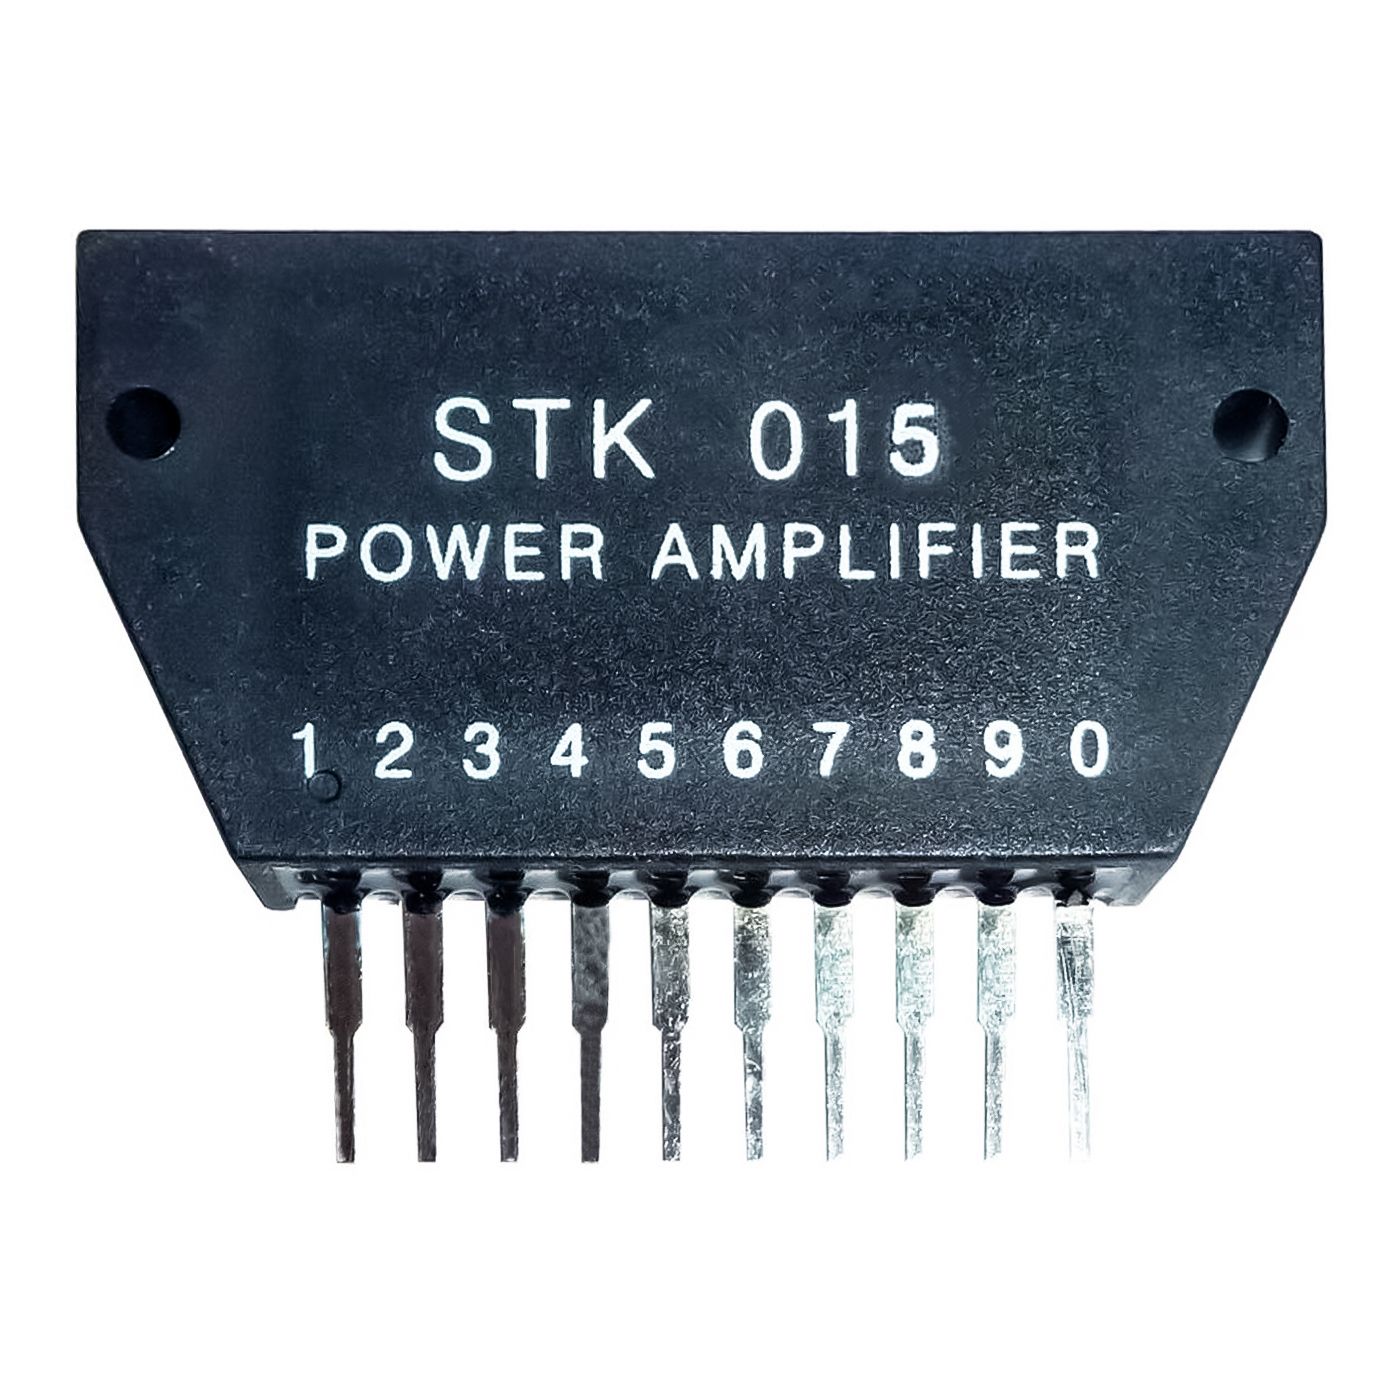 STK015 componente elettronico, circuito integrato, transistor, amplificatore di potenza, power amplifier, 10 contatti